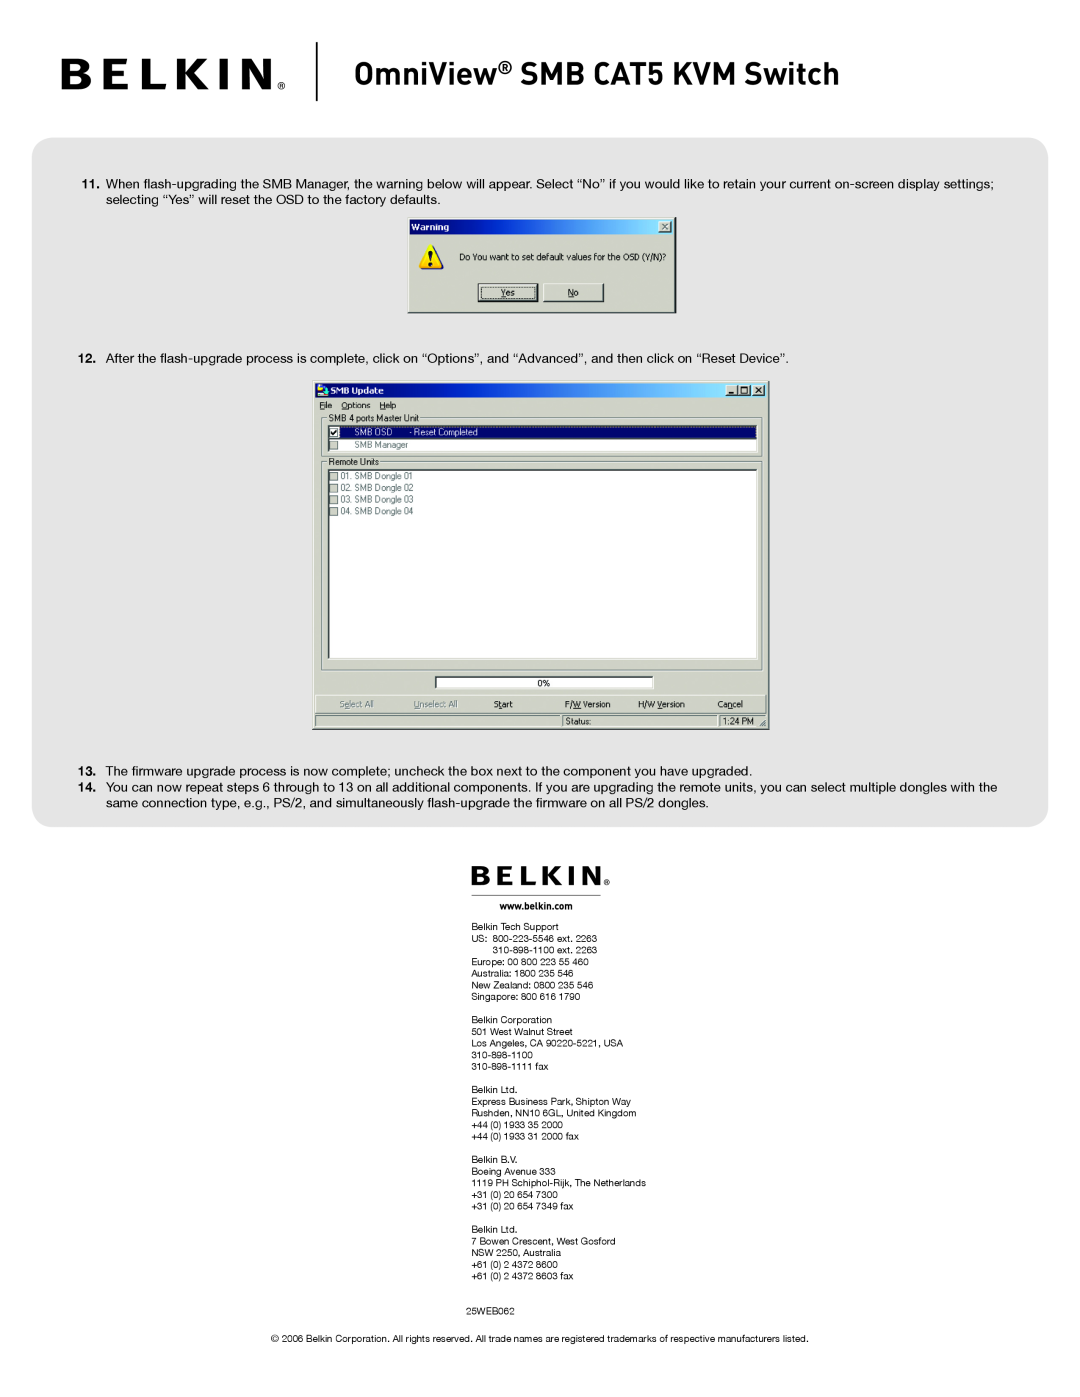 Belkin F1DP108A manual OmniView SMB CAT5 KVM Switch 